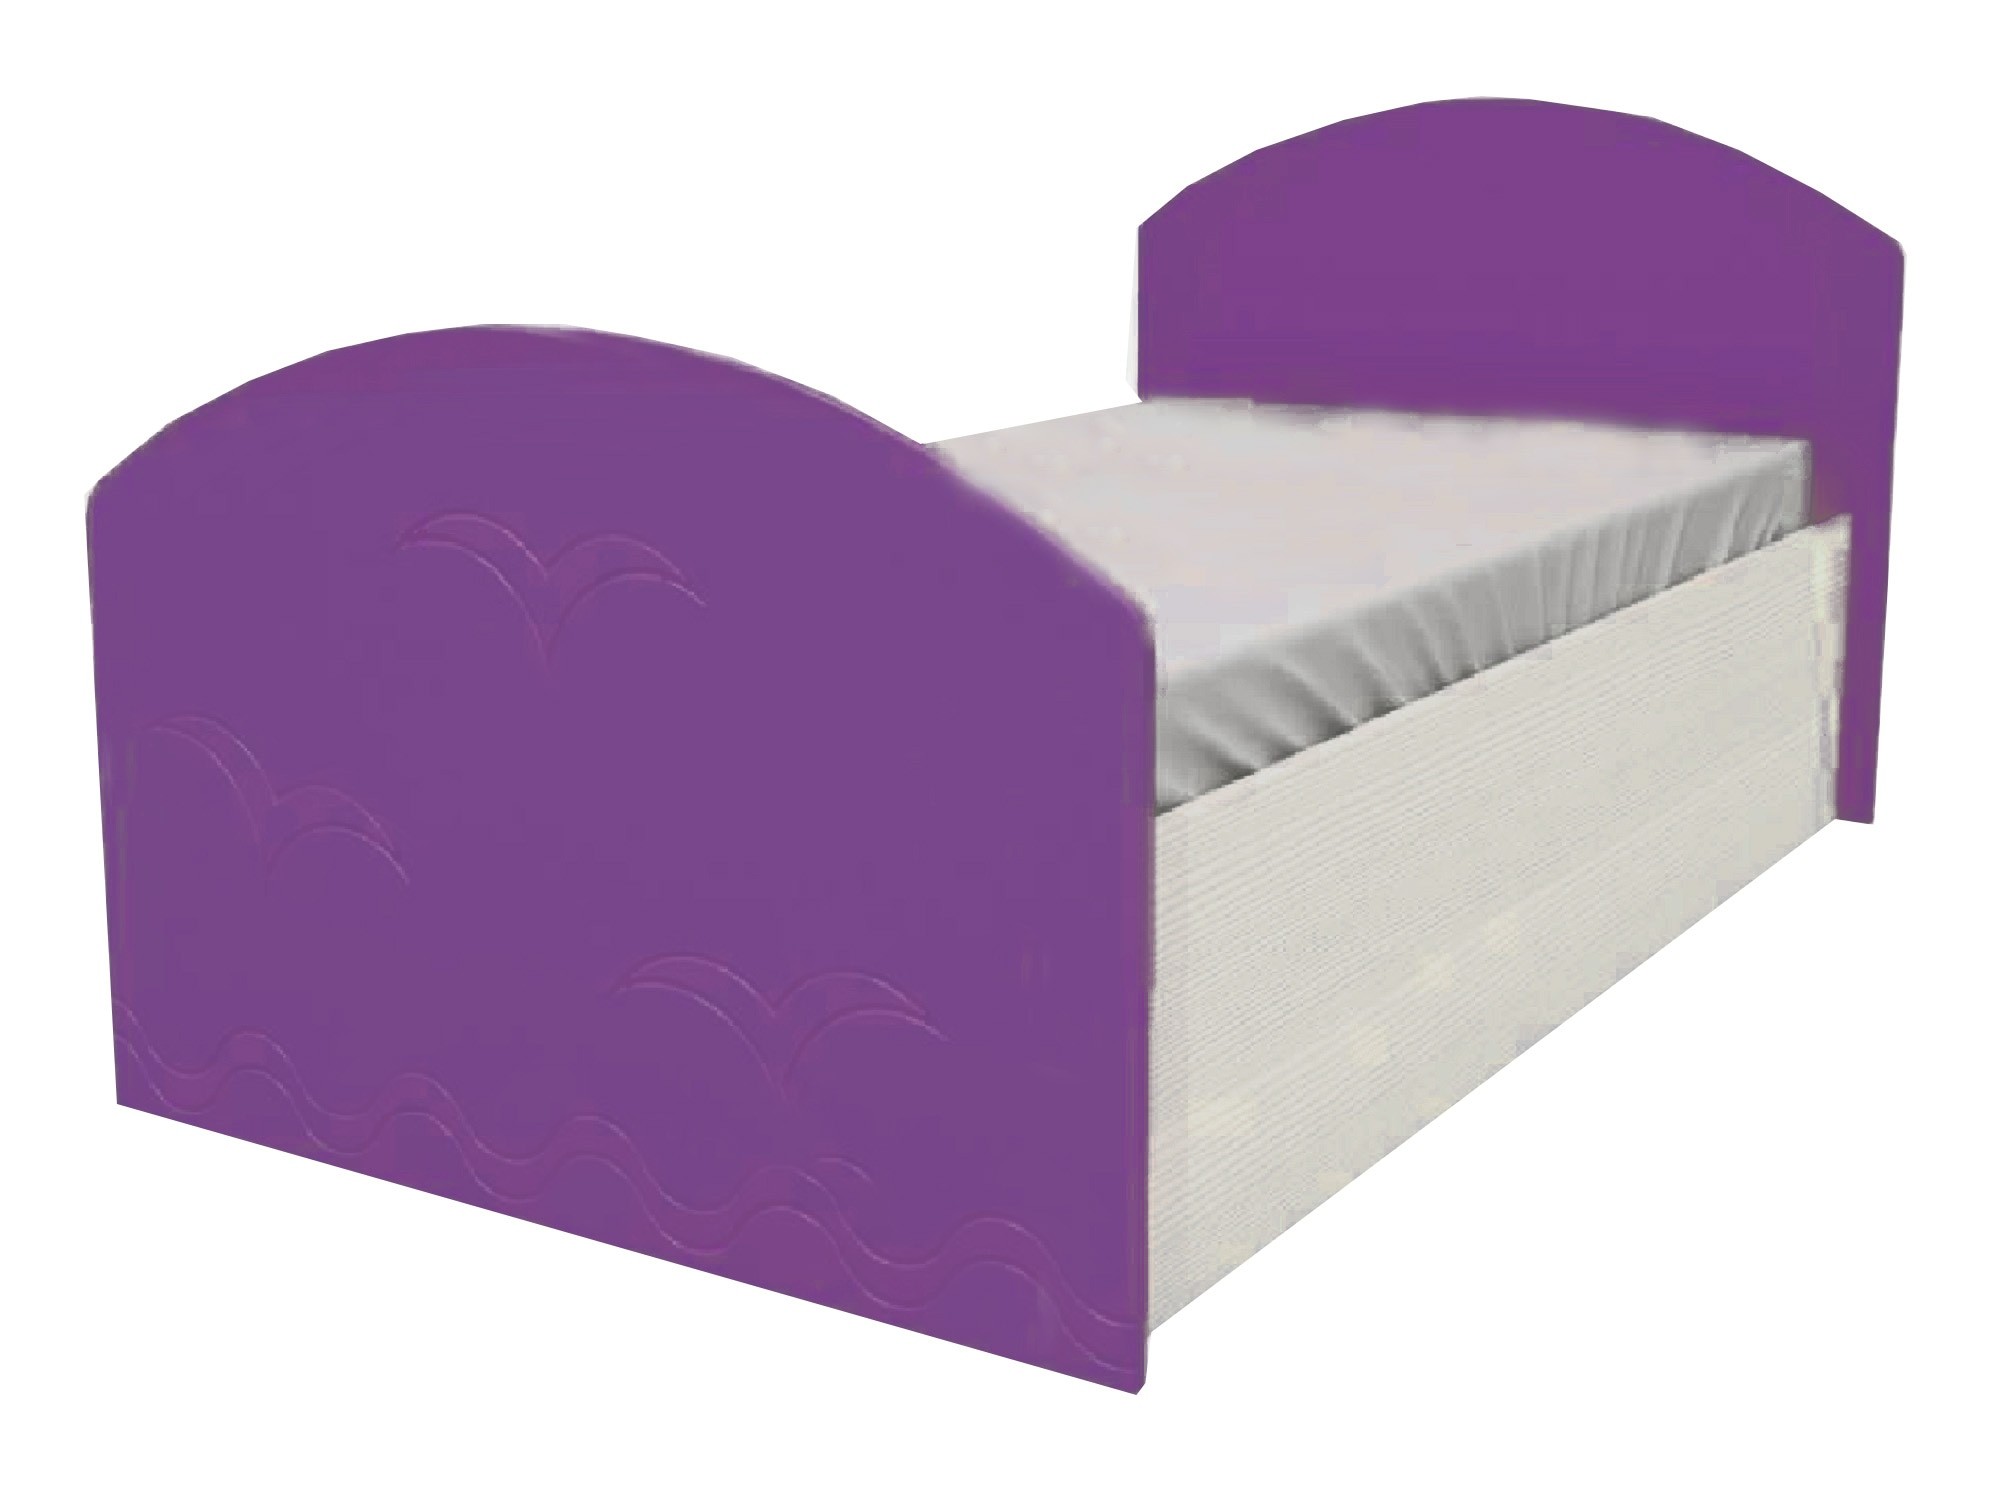 Юниор-2 Детская кровать 80, металлик (Фиолетовый металлик, Дуб белёный) Фиолетовый металлик, МДФ, ЛДСП детская кровать дельфин 80х200 синий металлик дуб белёный синий металлик мдф лдсп